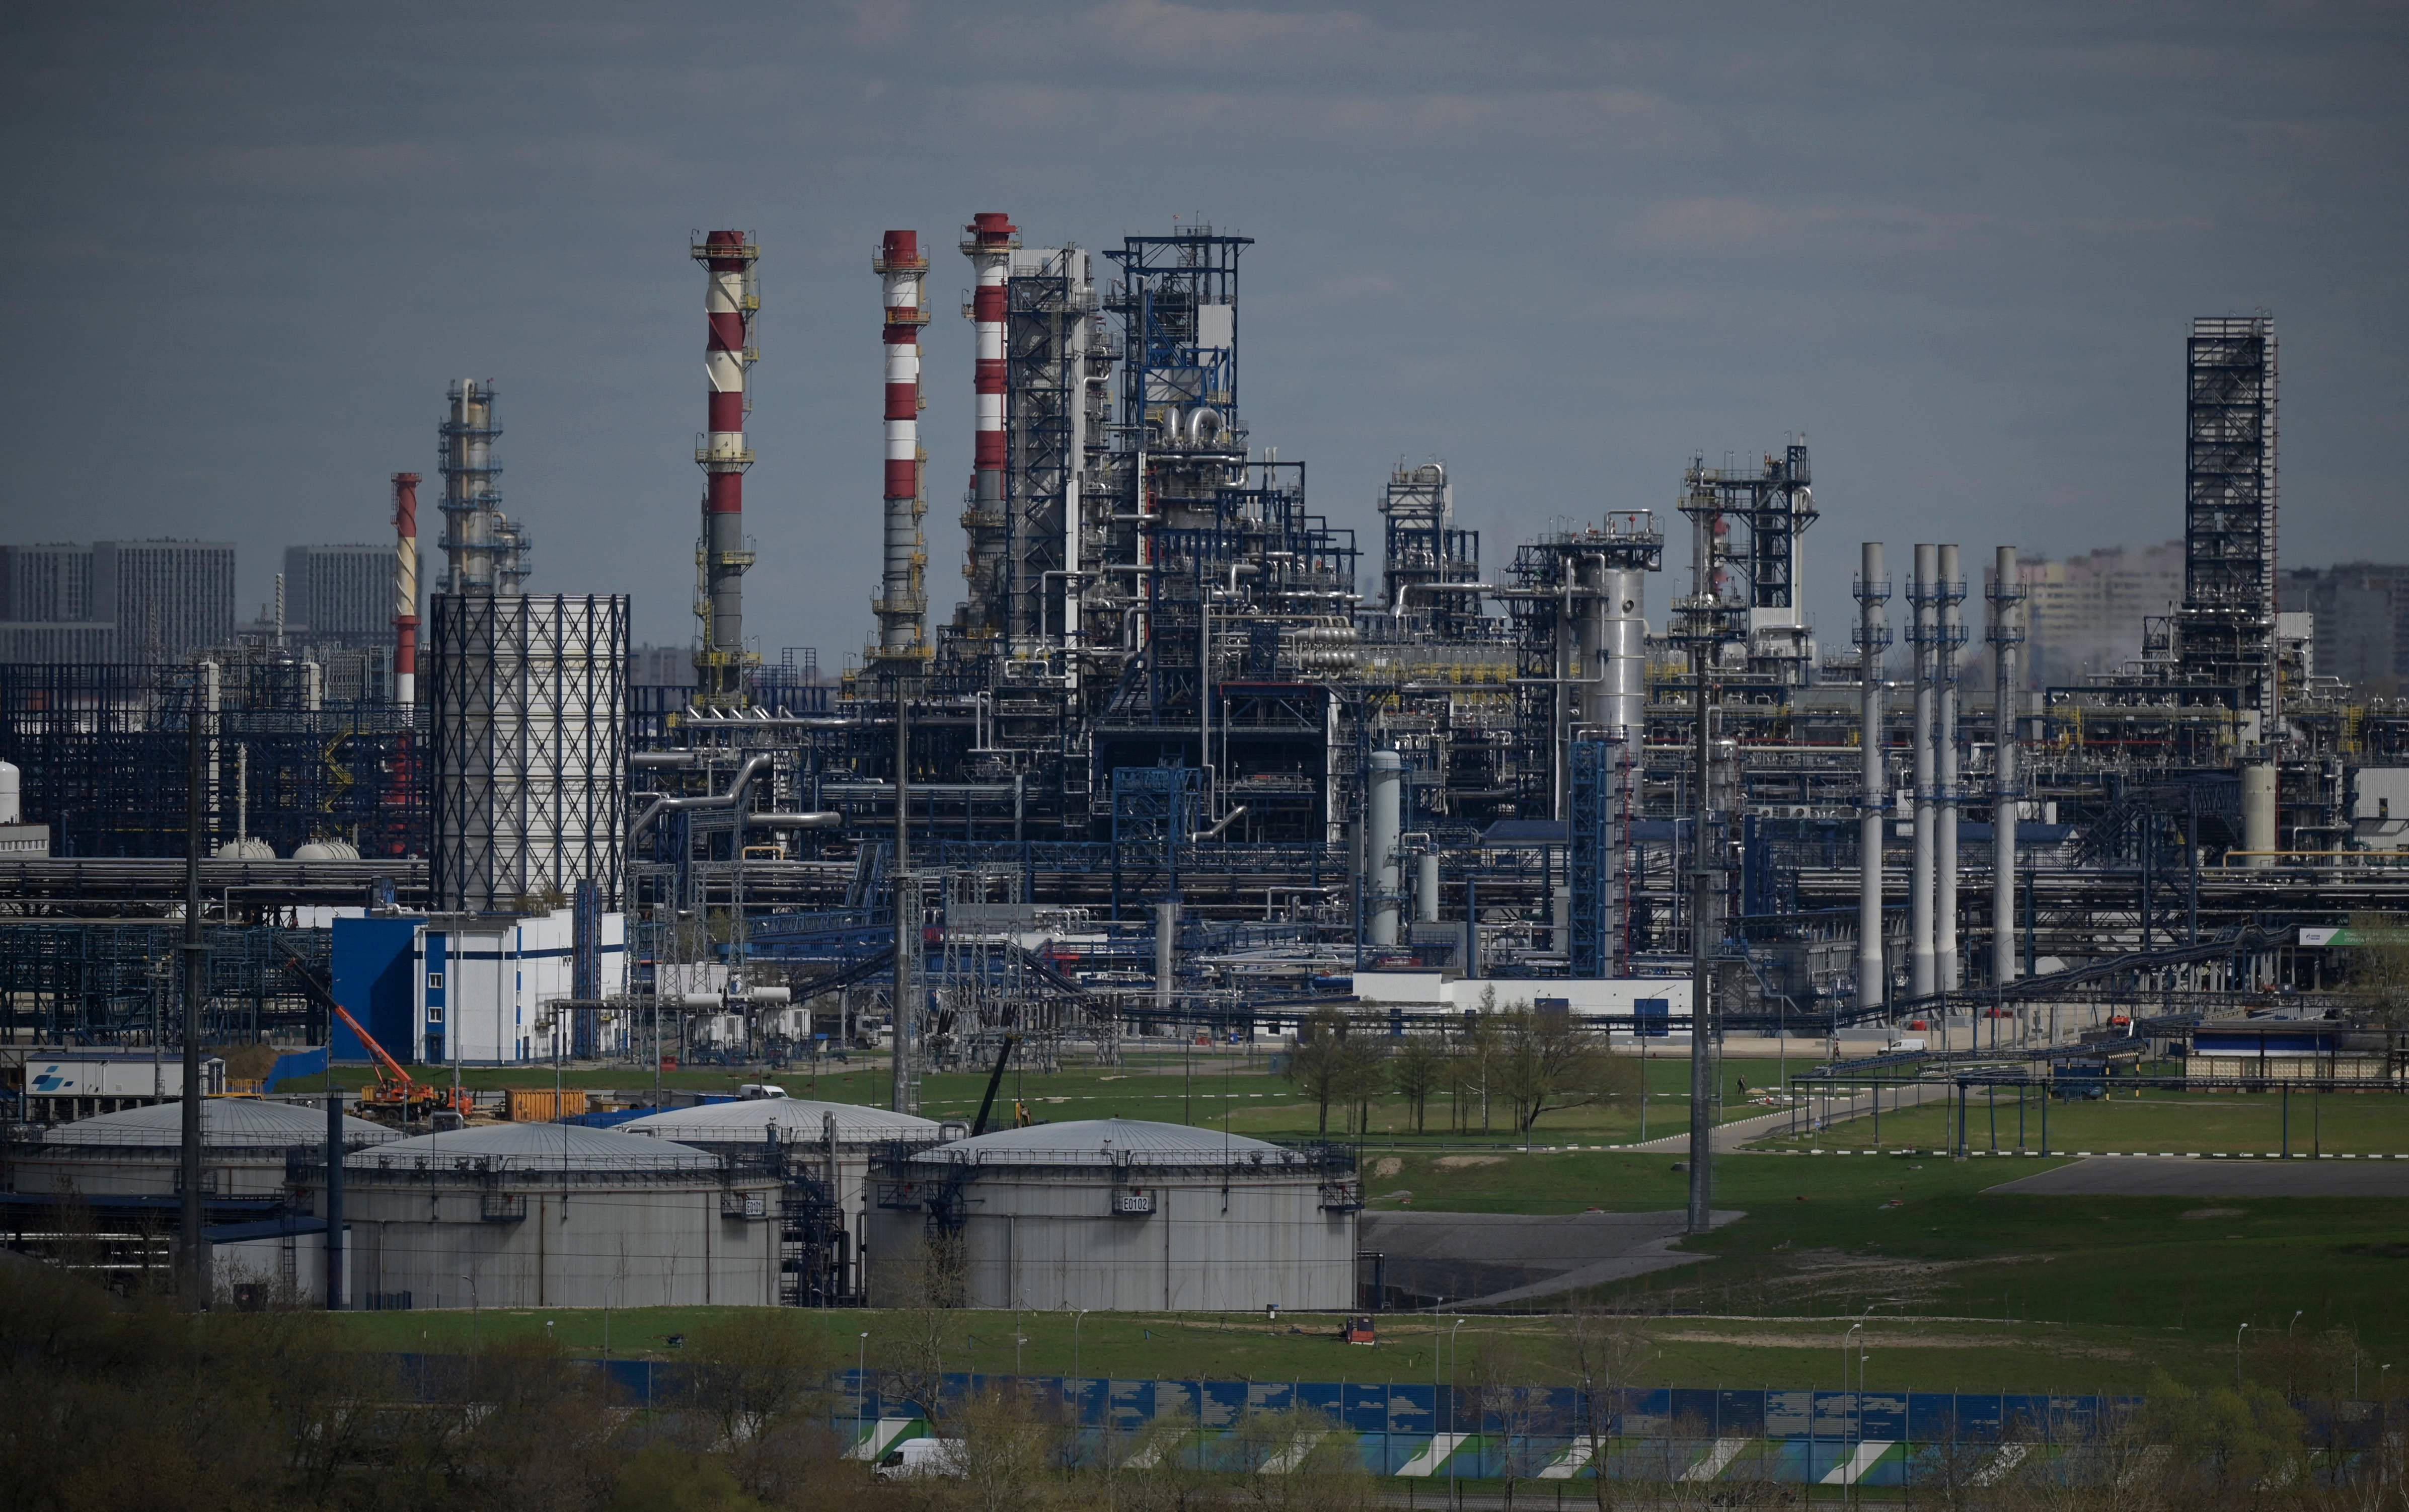 当地时间4月28日,俄罗斯天然气工业石油公司位于莫斯科东南郊的炼油厂